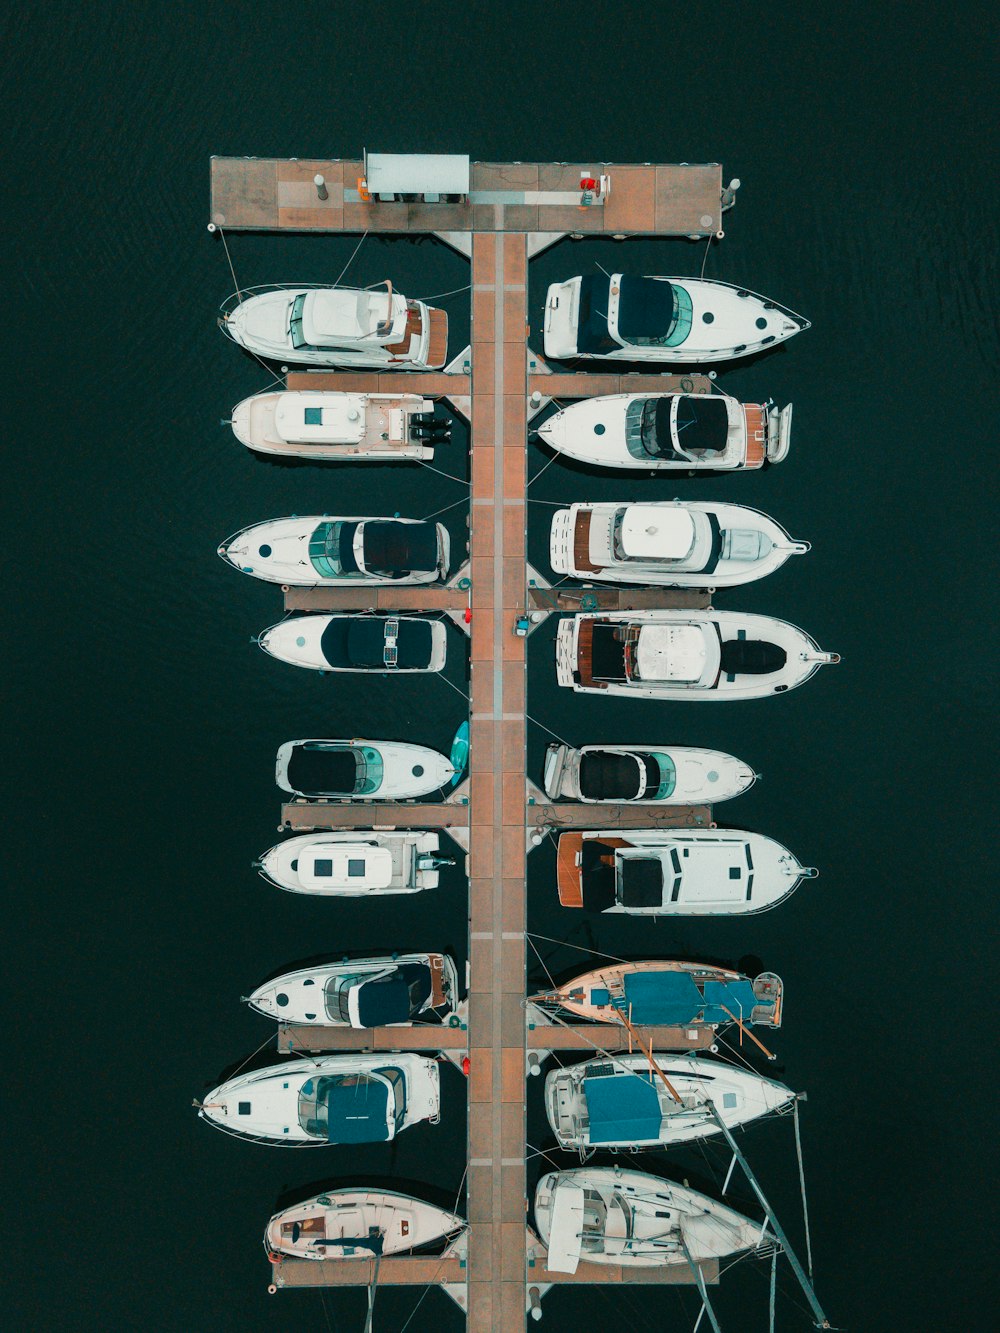 barco branco e marrom no corpo de água durante o dia